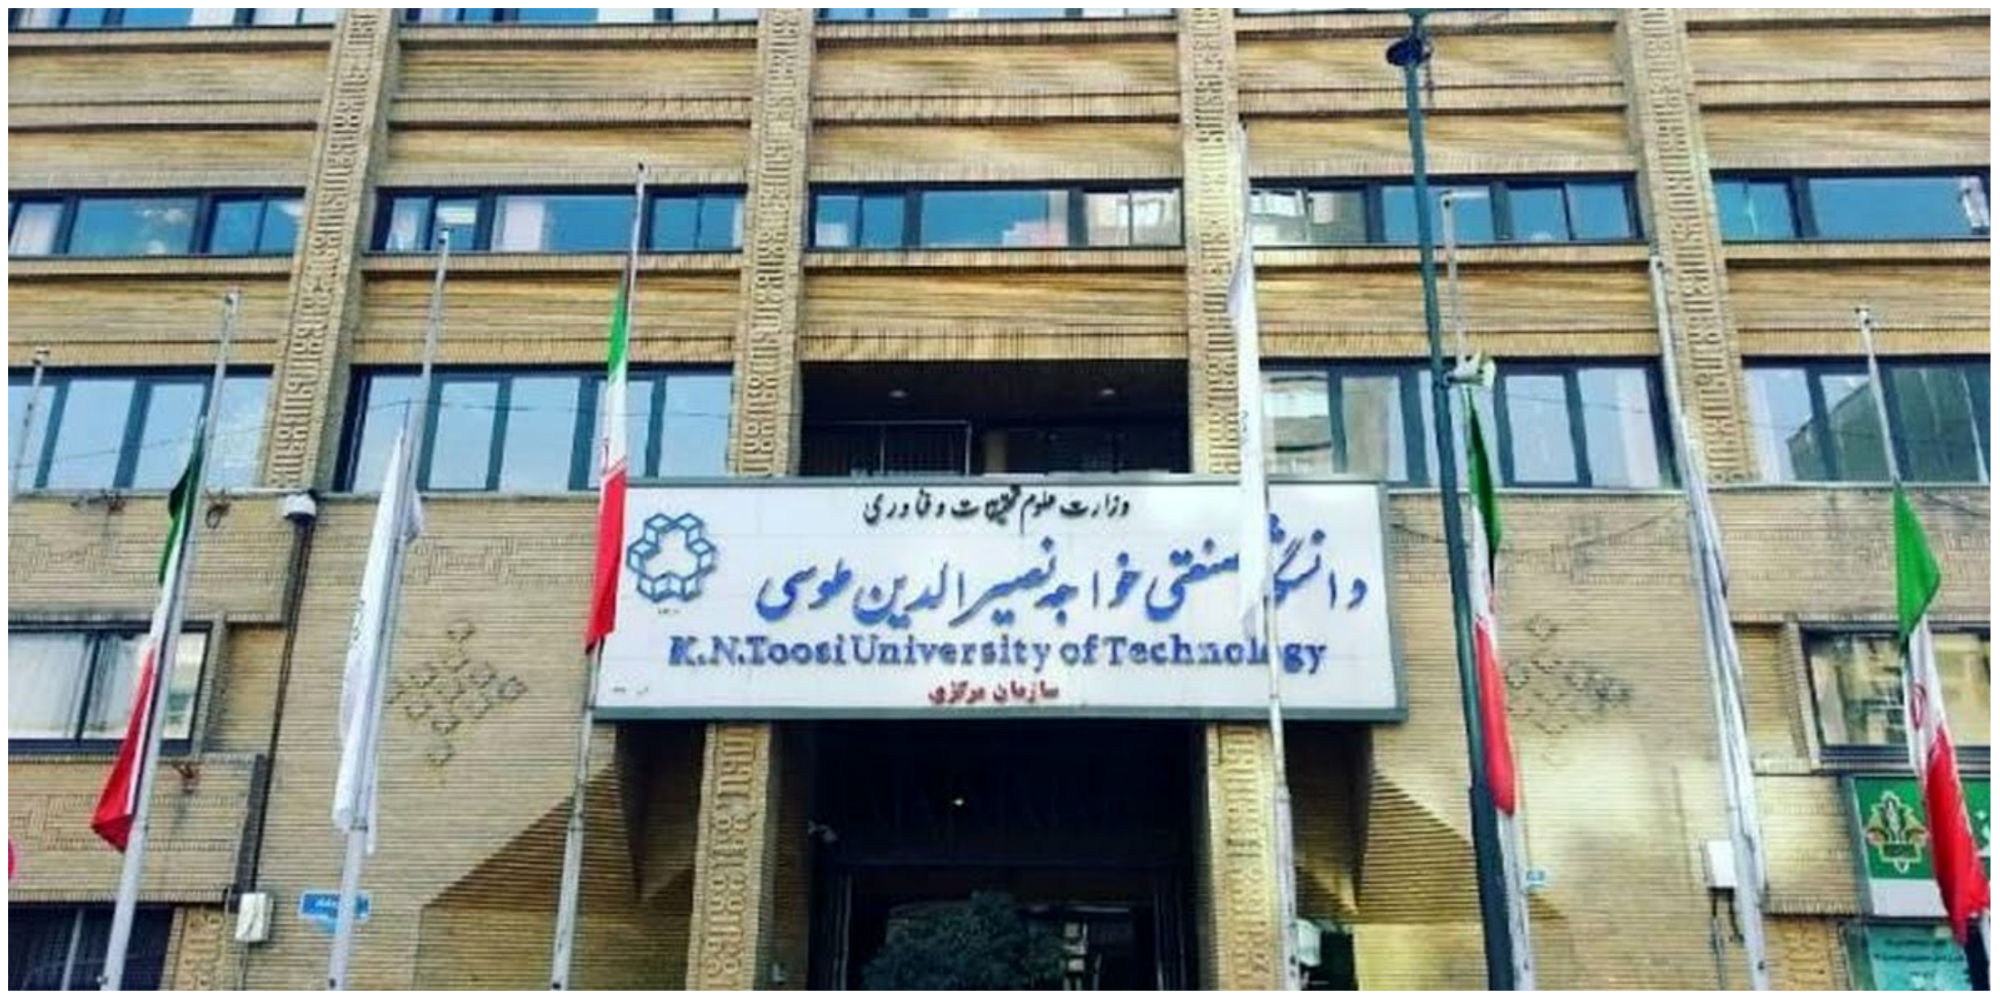 ورود دانشجویان معترض به یک دانشگاه معروف تهران ممنوع شد!